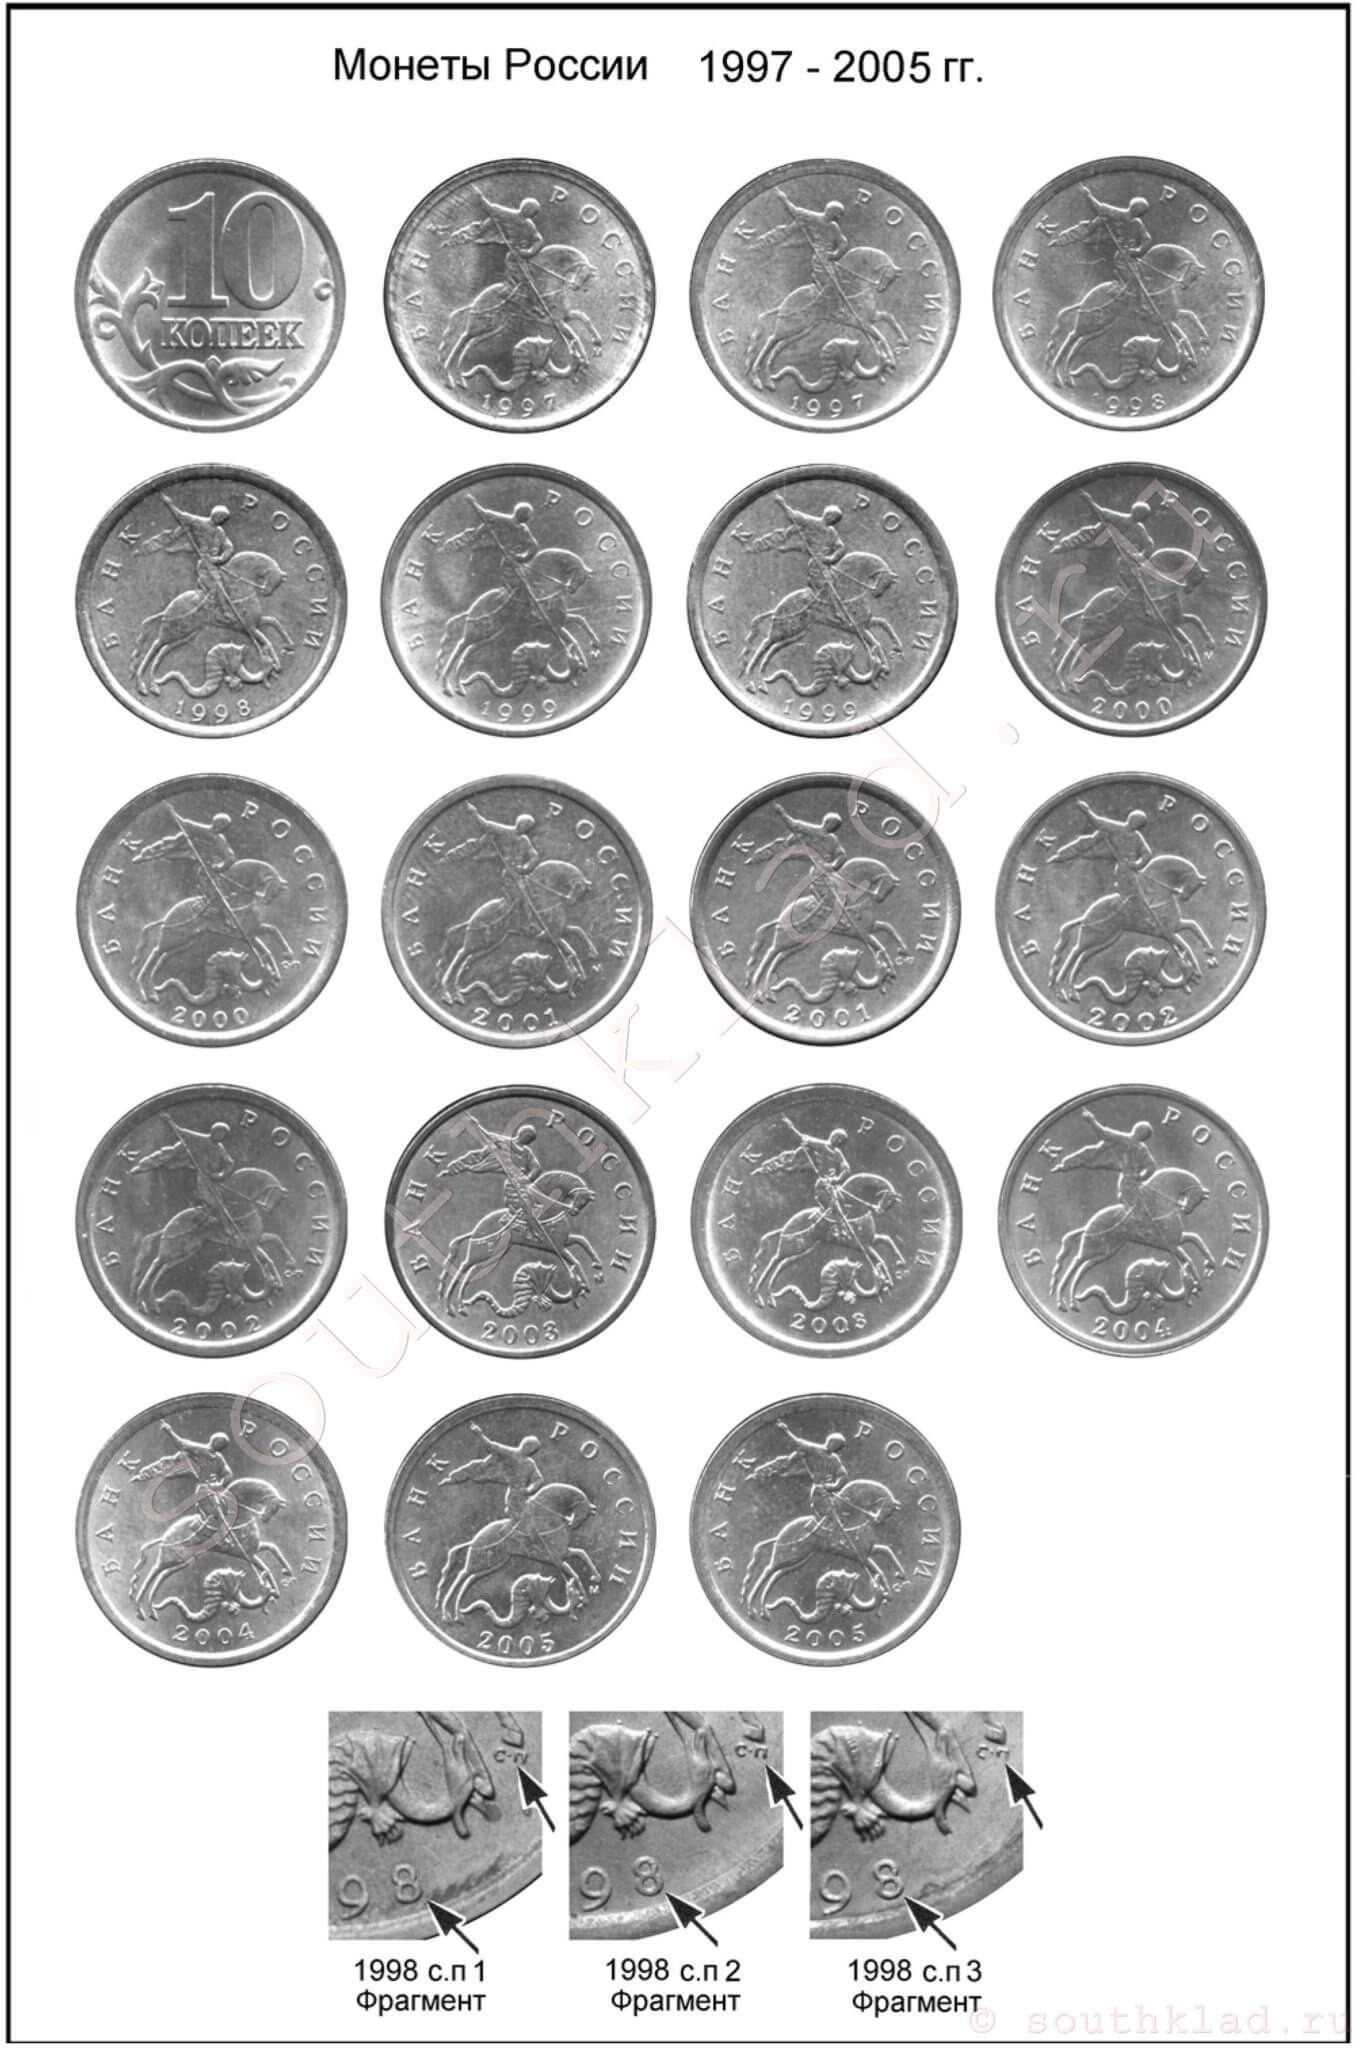 10 копеек. Монеты России образца 1997 года